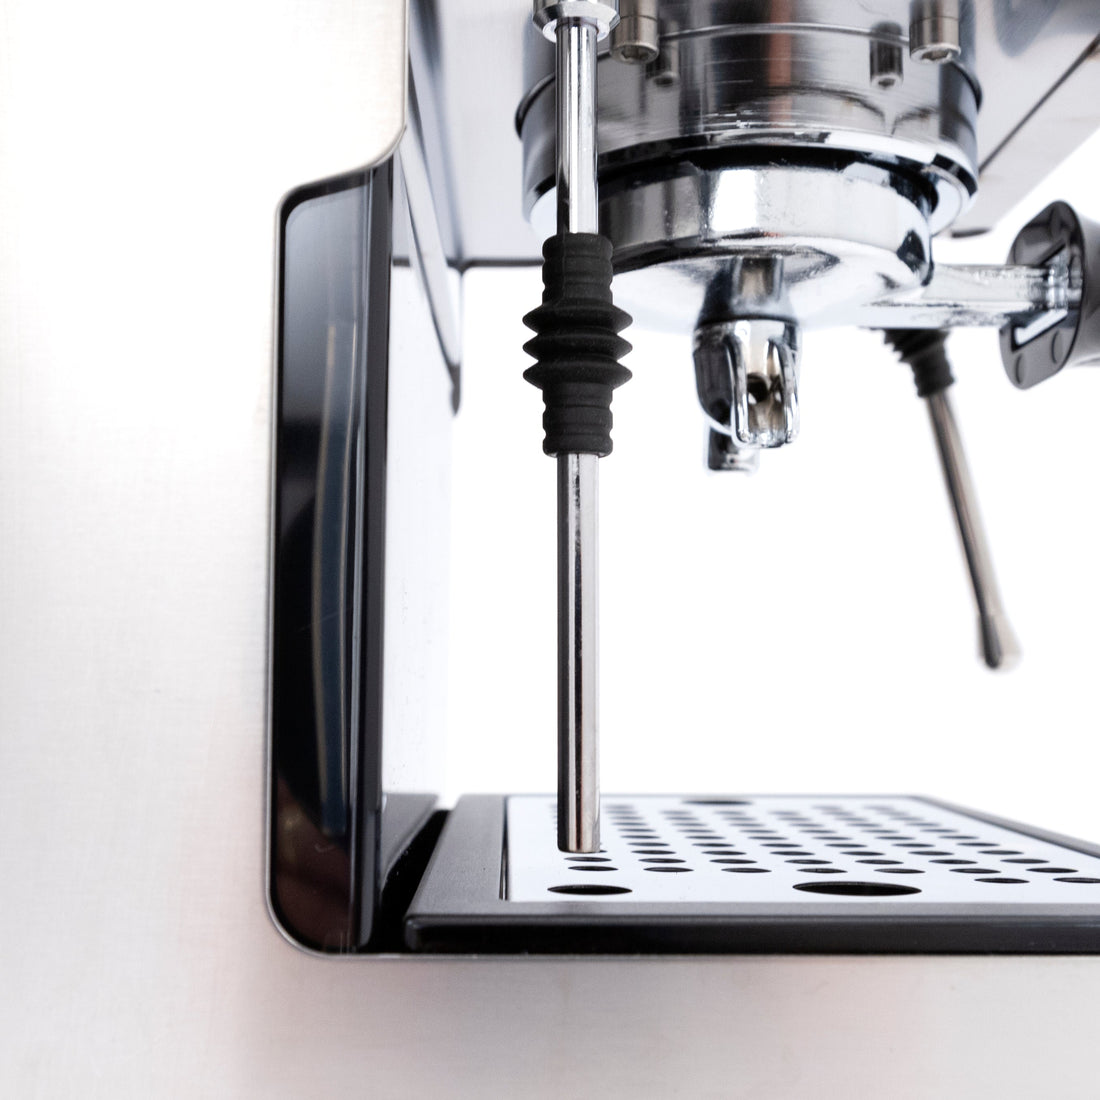 Gaggia Classic Evo Pro Semi-Automatic Espresso Machine with Tiger Maple